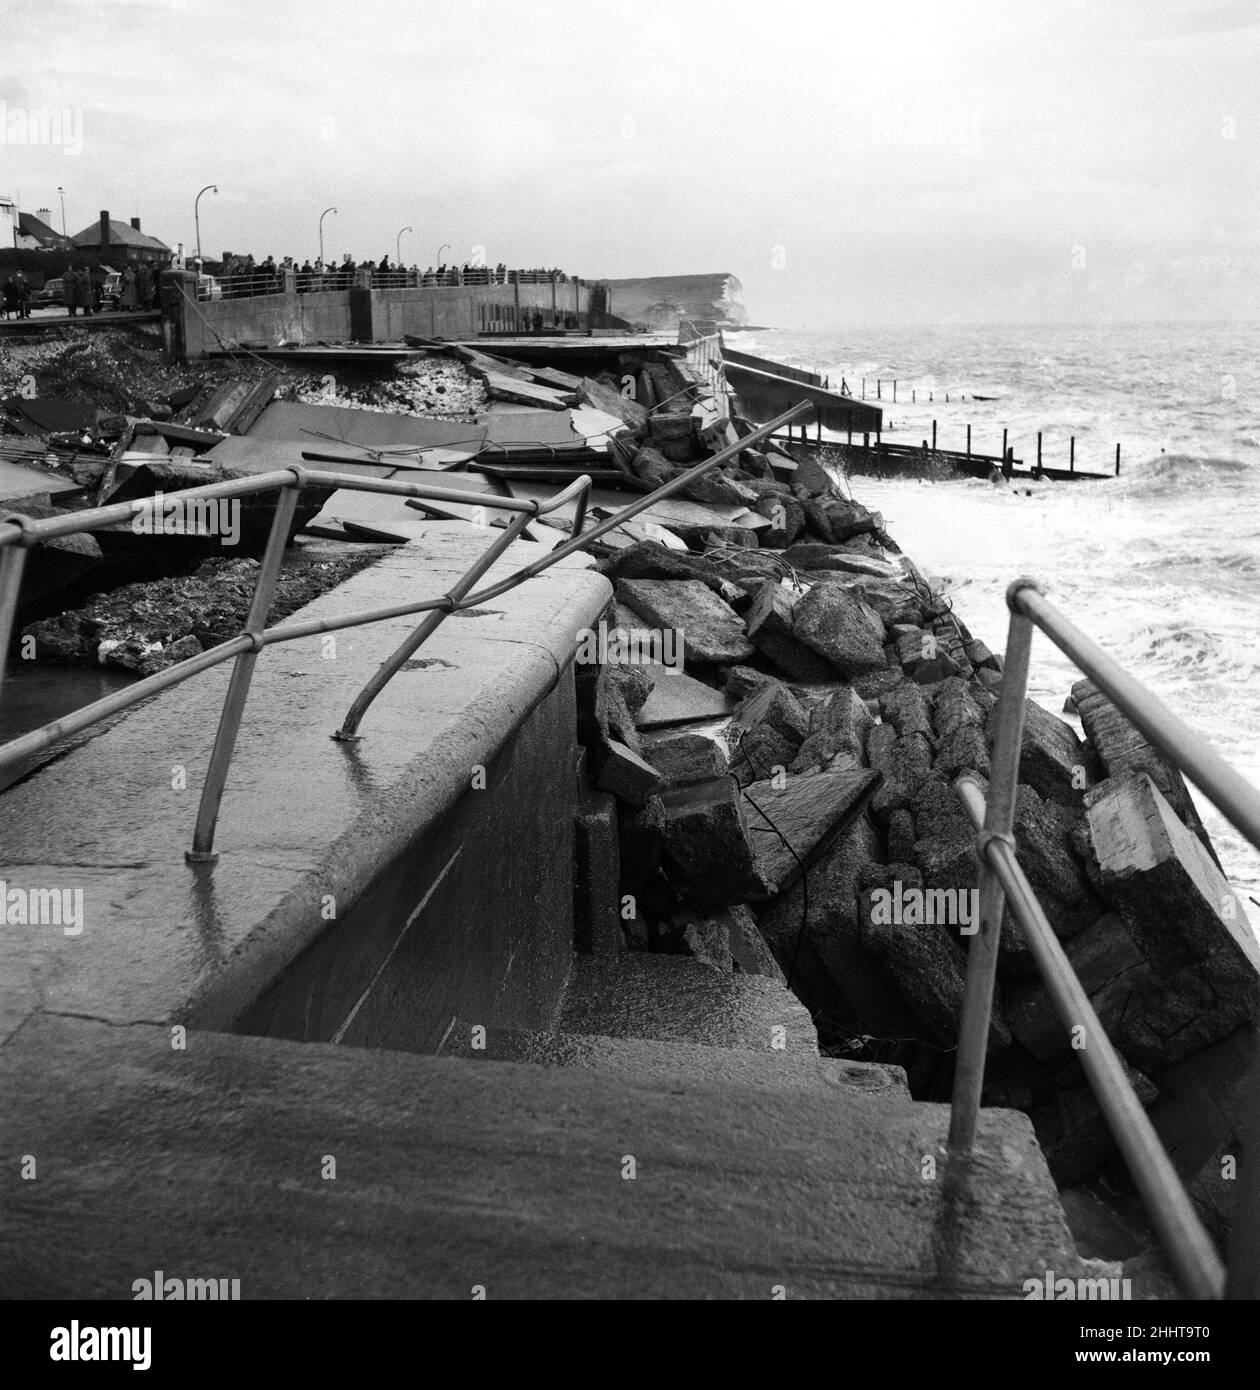 Dégâts causés par la tempête sur la promenade de Seaford.Ces derniers jours, de féroces gales ont balayé les îles britanniques.Ici, à Seaford, la promenade a été rompue par les marées exceptionnellement fortes.Novembre 1954. Banque D'Images